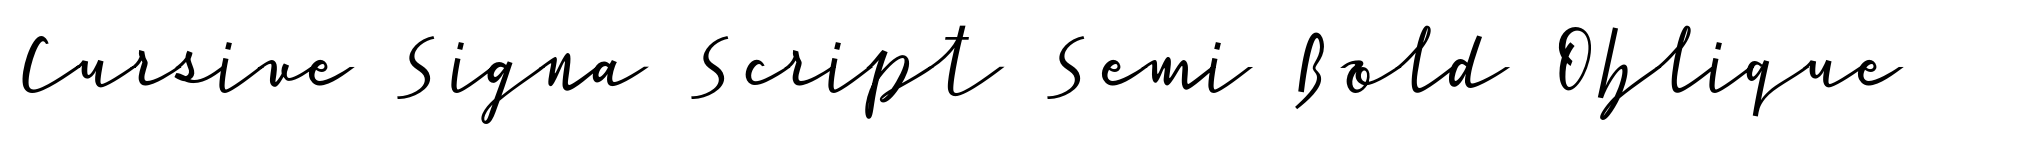 Cursive Signa Script Semi Bold Oblique image